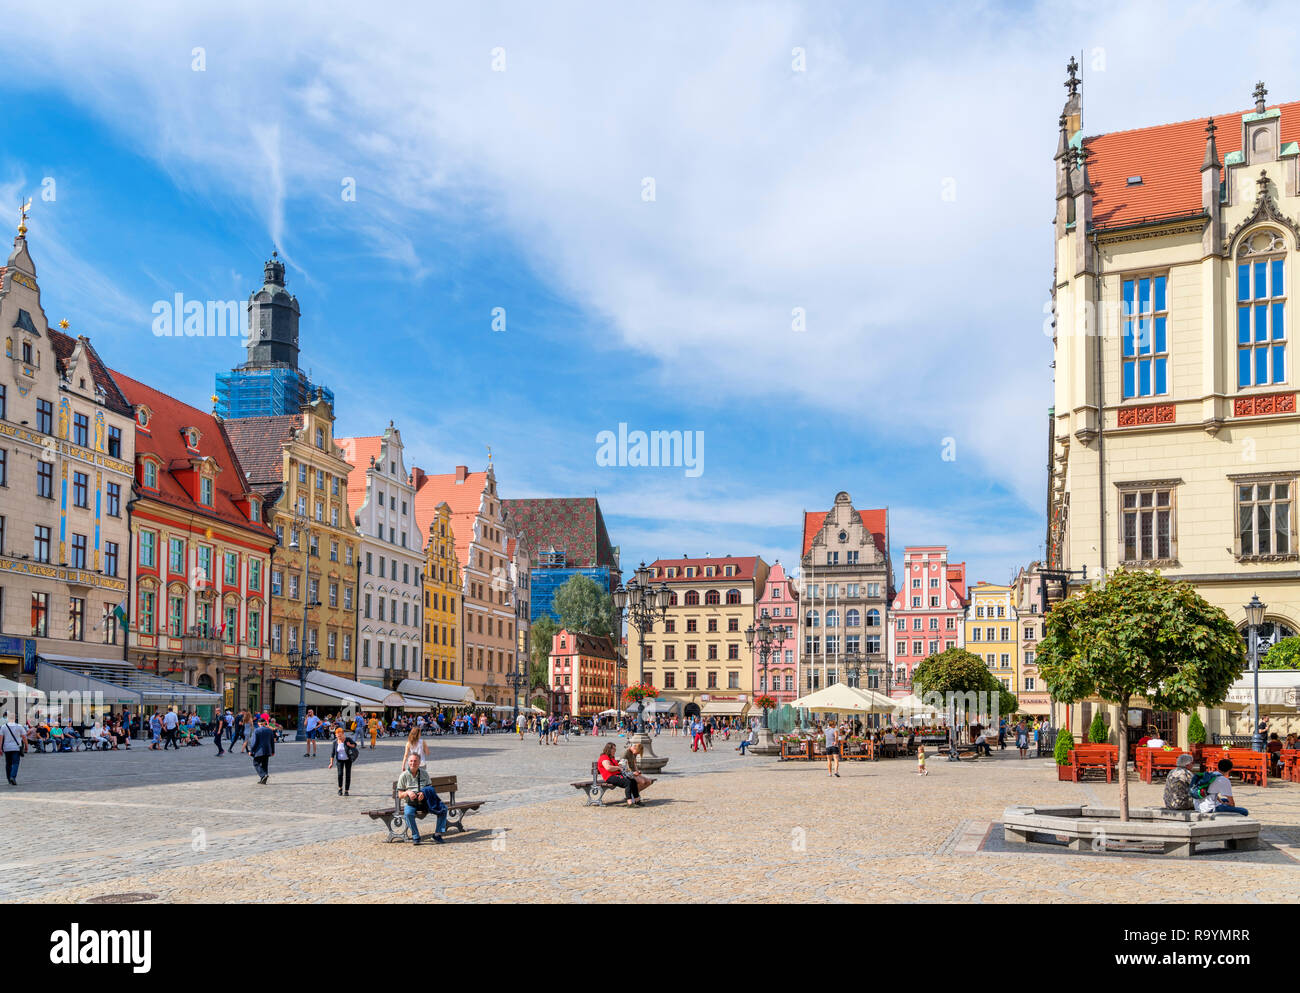 Wroclaw, Old Town (Stare Miasto). Negozi e bar sulla piazza del mercato (Rynek abbiamo Wrocławiu), Wroclaw, Polonia Foto Stock